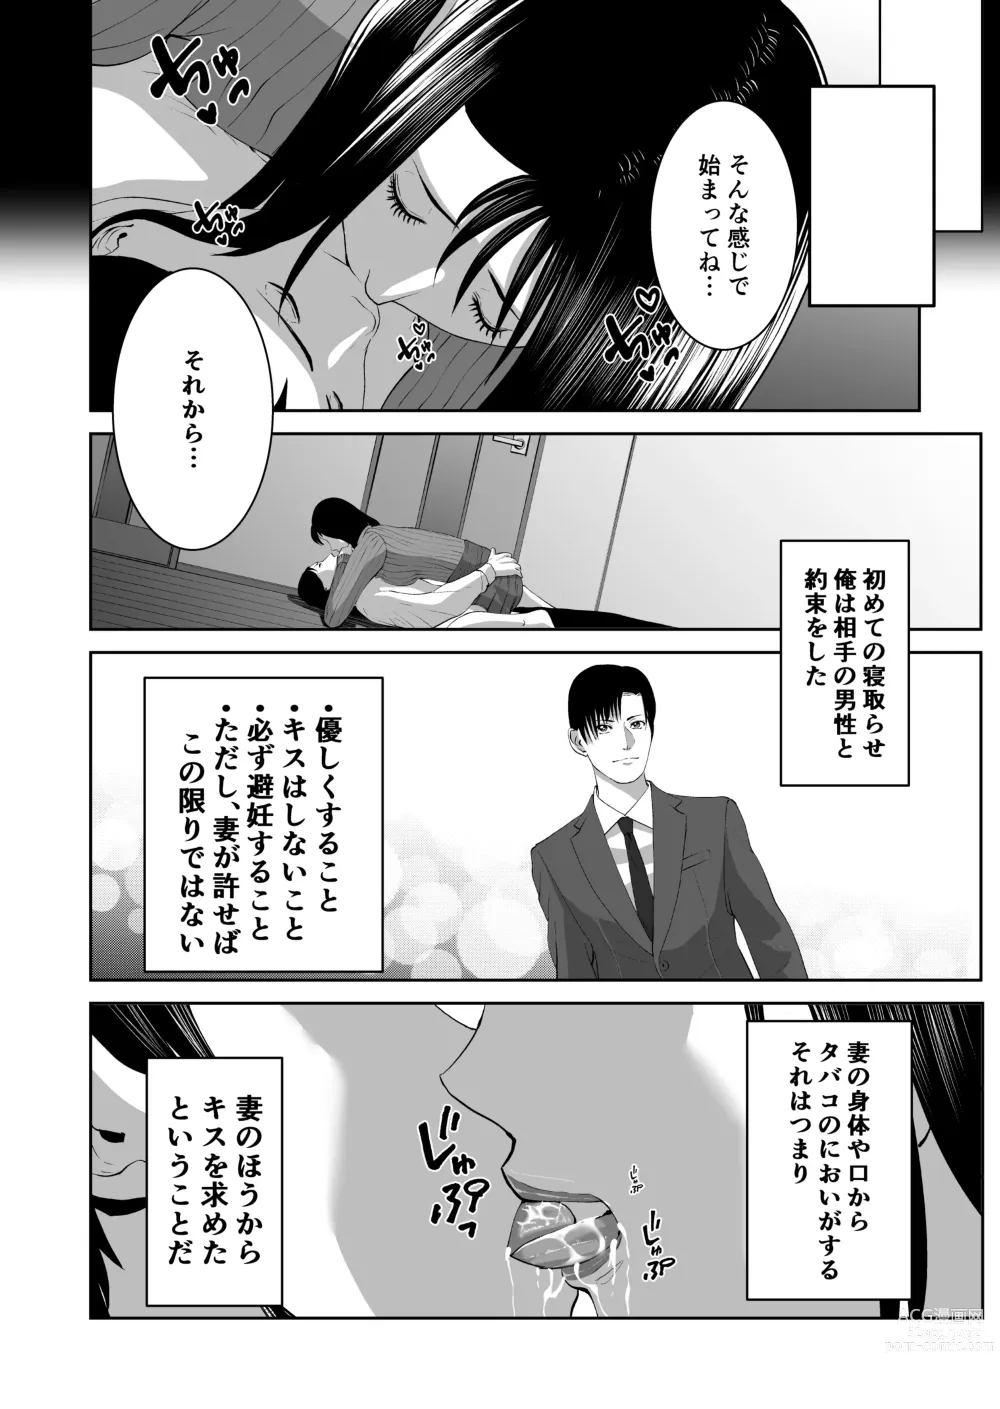 Page 12 of doujinshi Anata no Tame Dakara